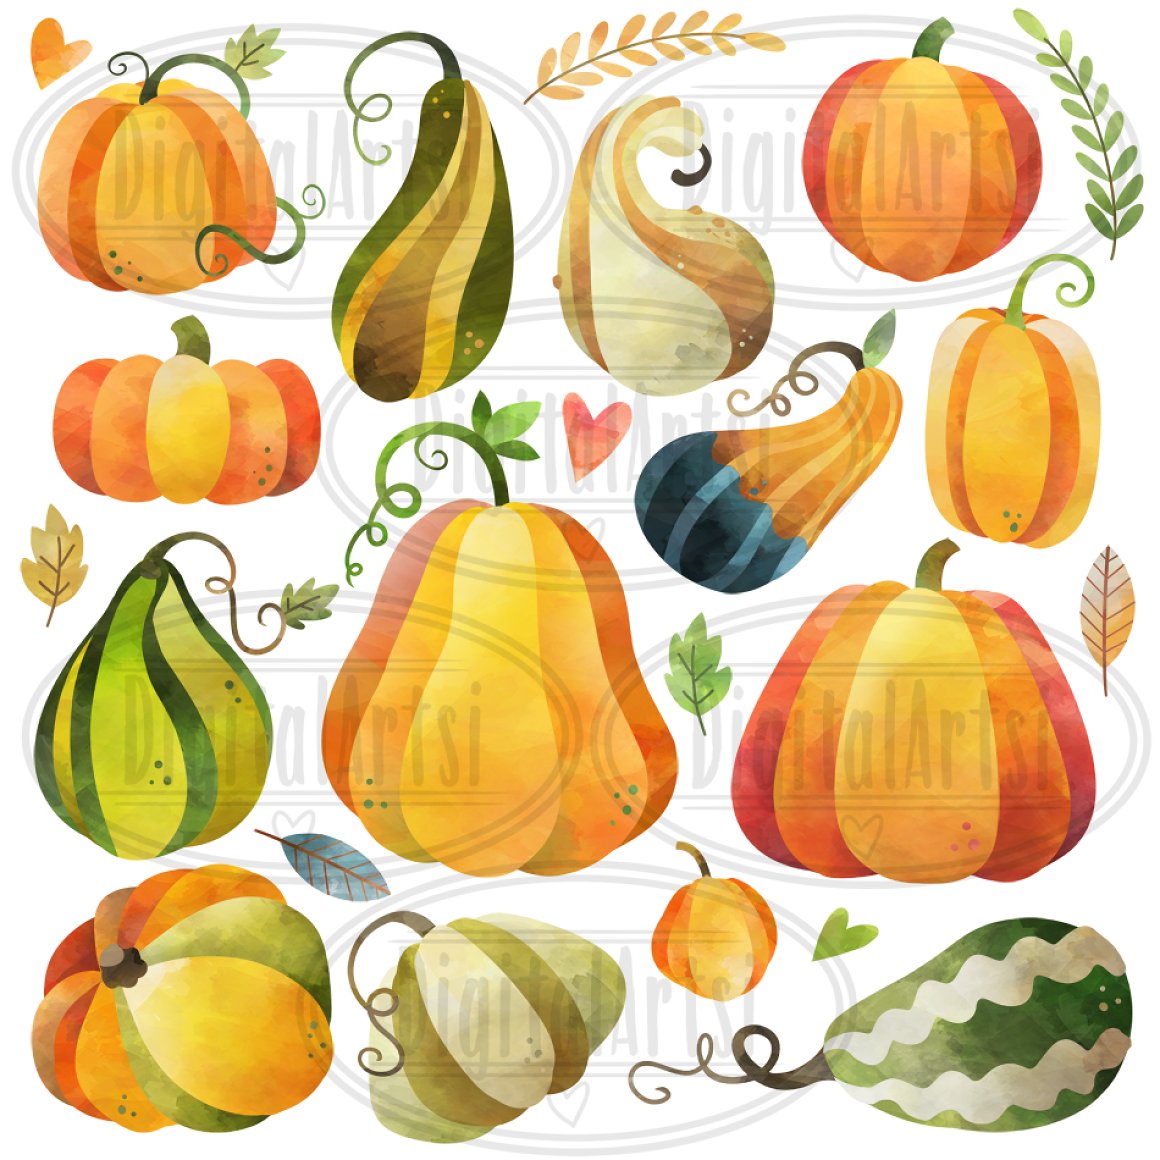 Watercolor Pumpkins Clipart.